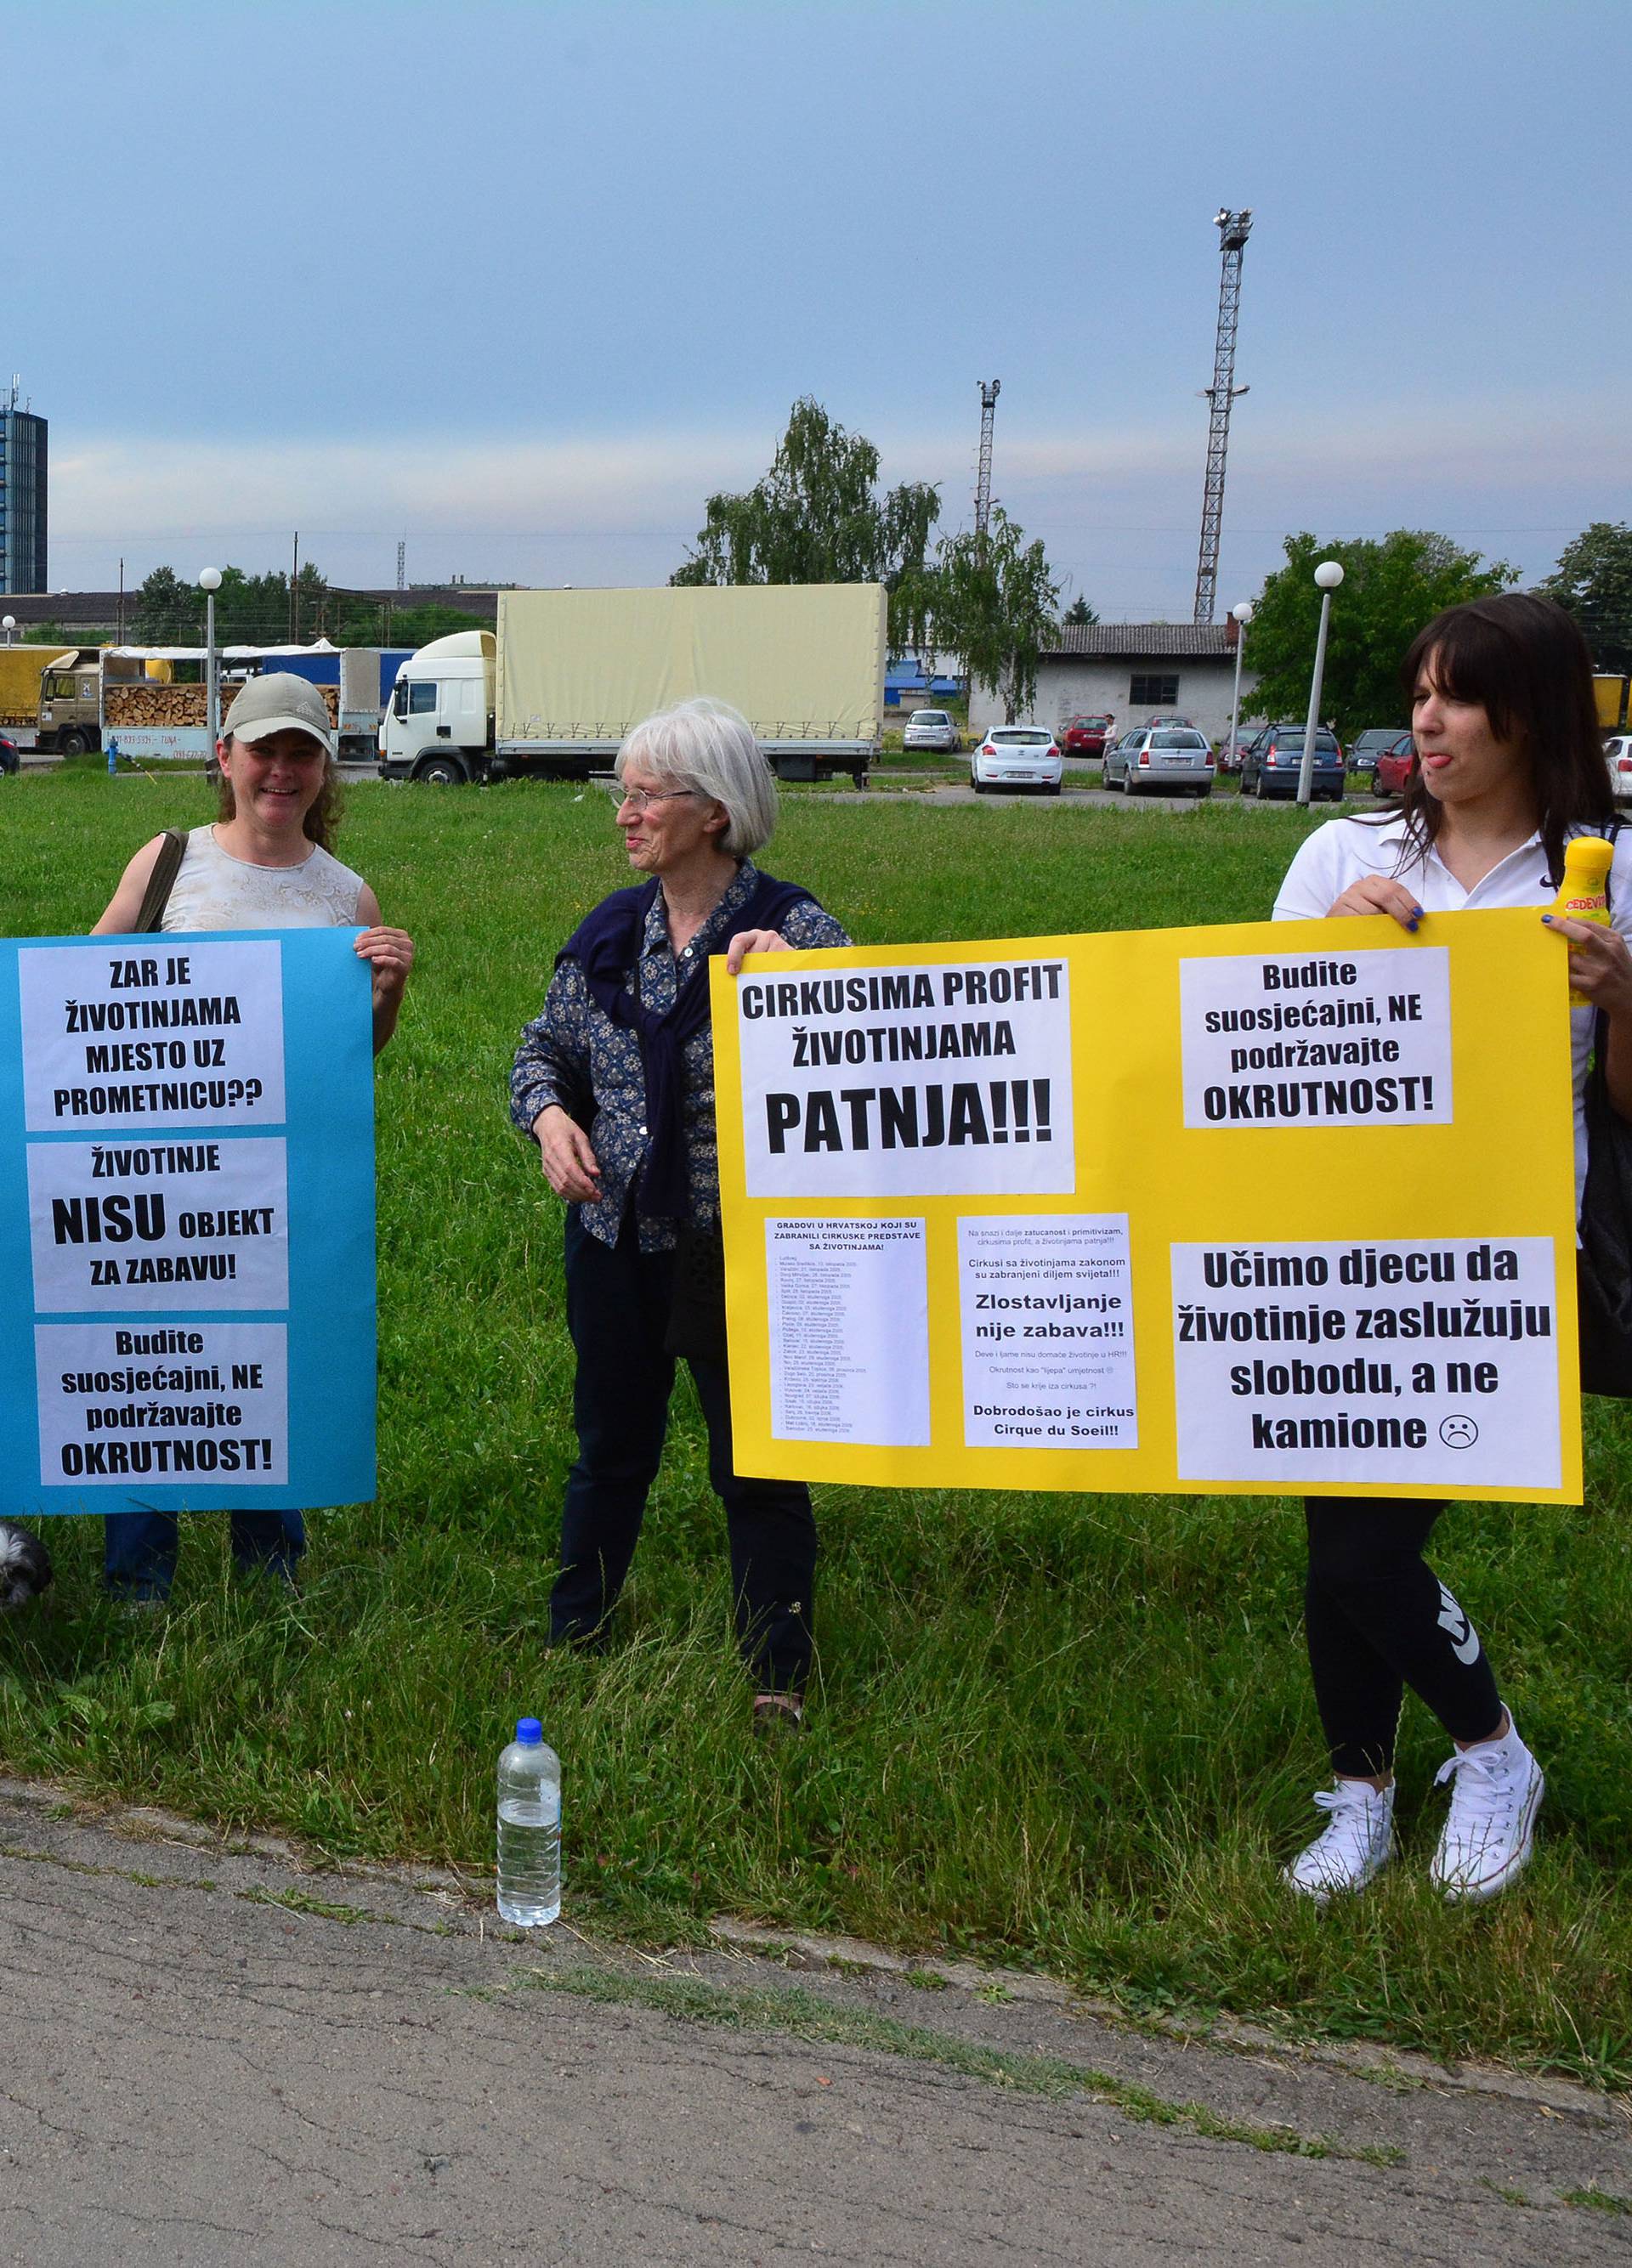 Cirkus u gradu: Prosvjedovali su zbog ugroženih prava deva